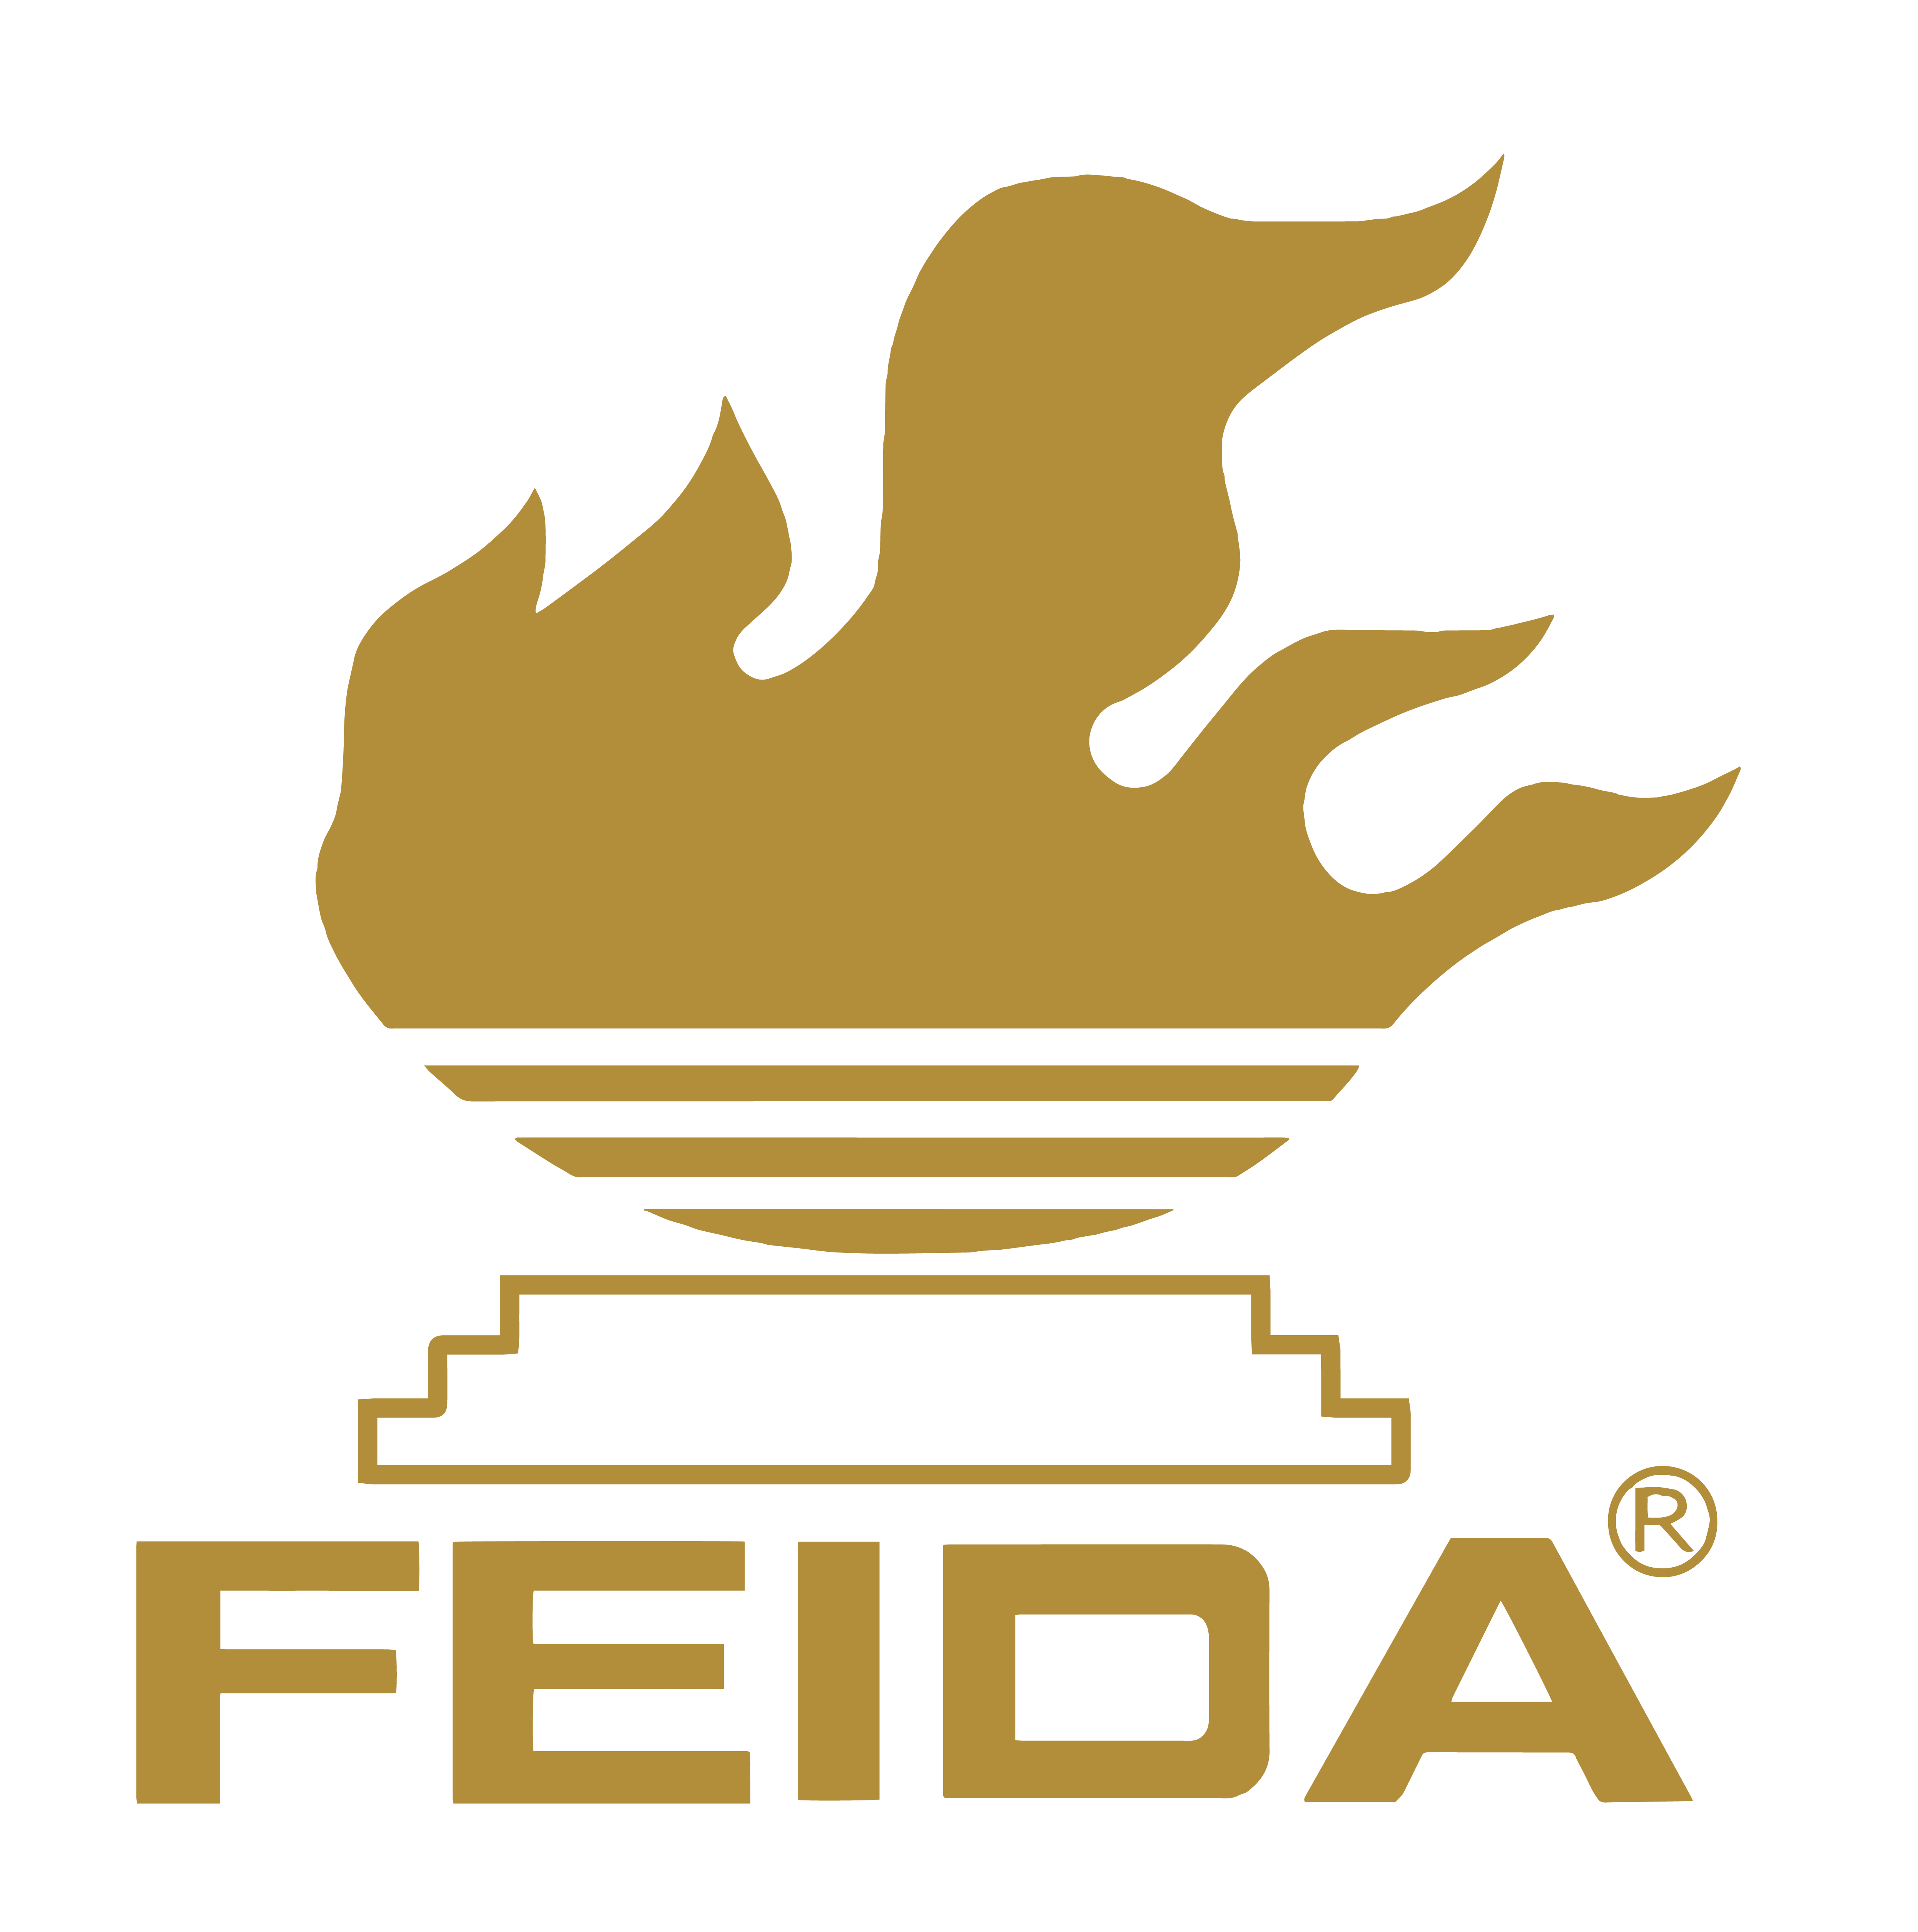 บริษัท เฟยดา จำกัด logo โลโก้